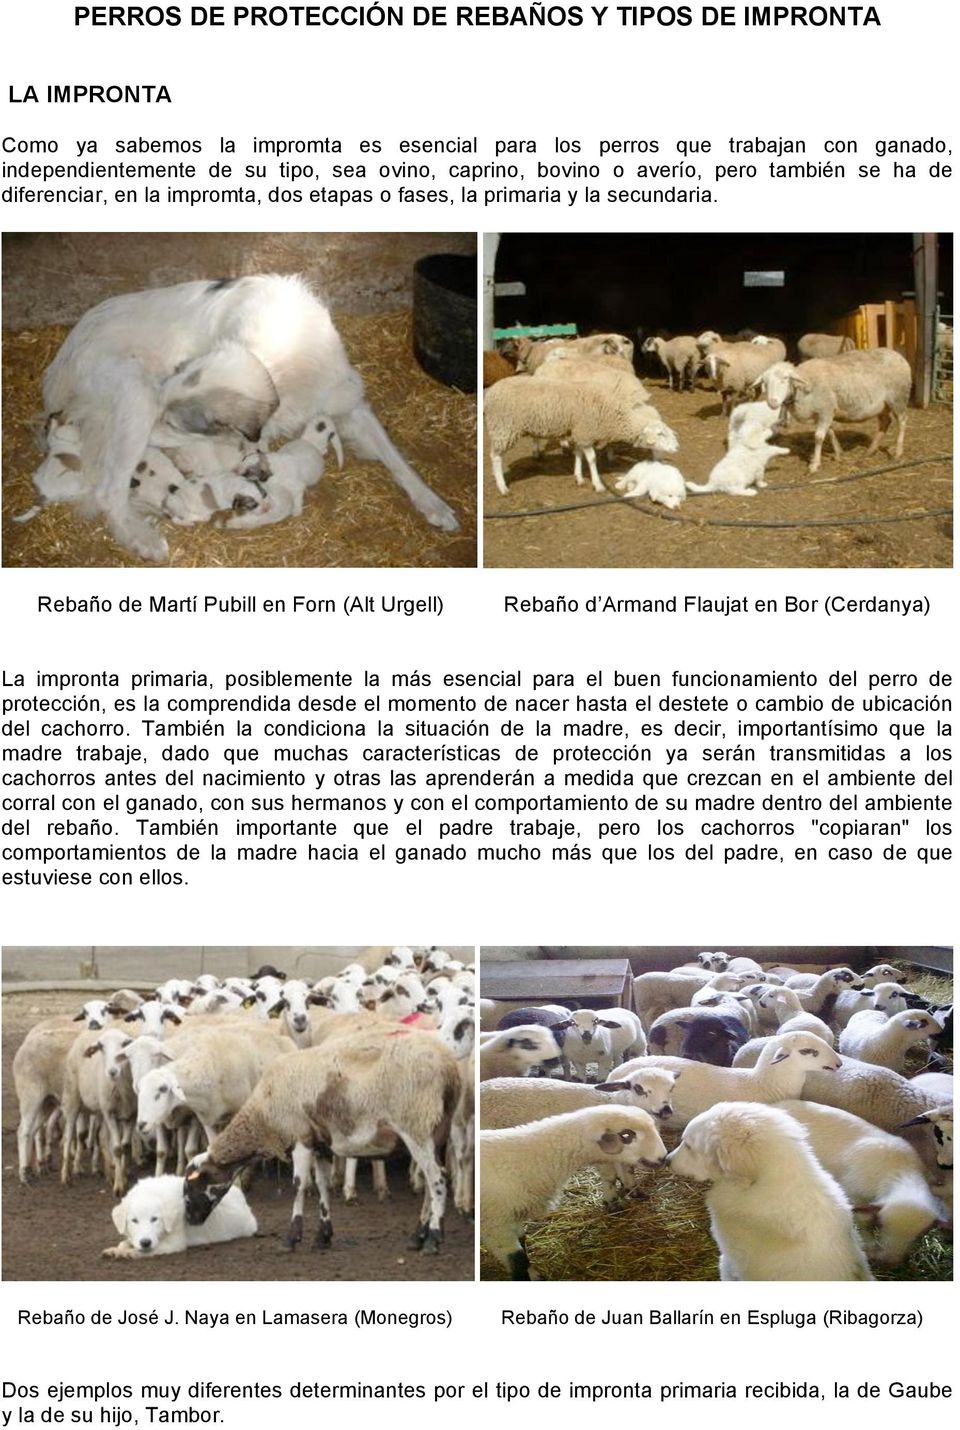 Rebaño de Martí Pubill en Forn (Alt Urgell) Rebaño d Armand Flaujat en Bor (Cerdanya) La impronta primaria, posiblemente la más esencial para el buen funcionamiento del perro de protección, es la